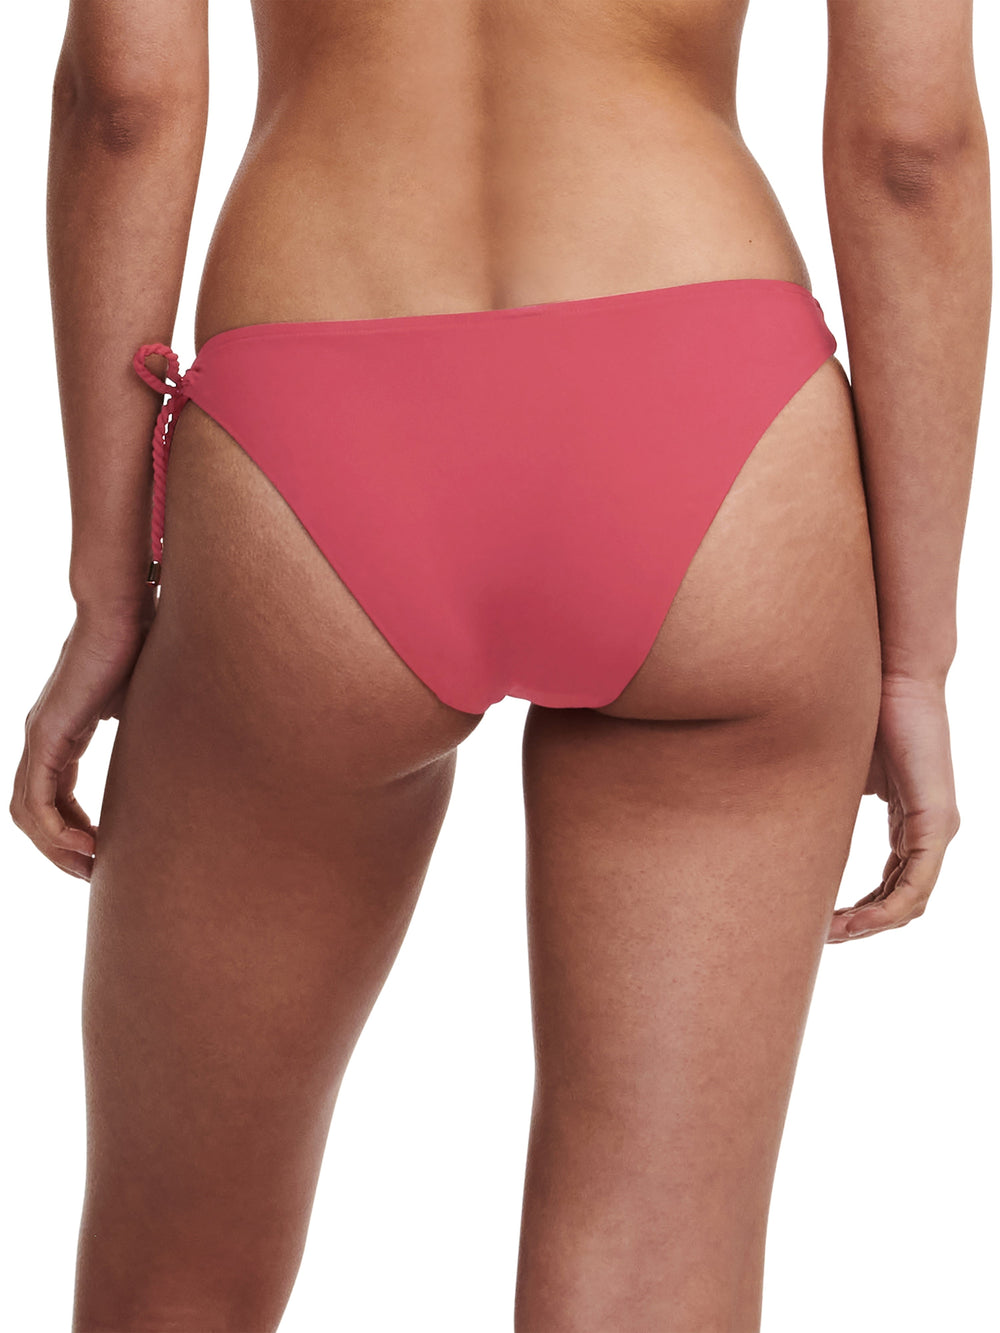 Chantelle Swimwear Inspire Bikini - Bikini de copa completa rojo granate Chantelle